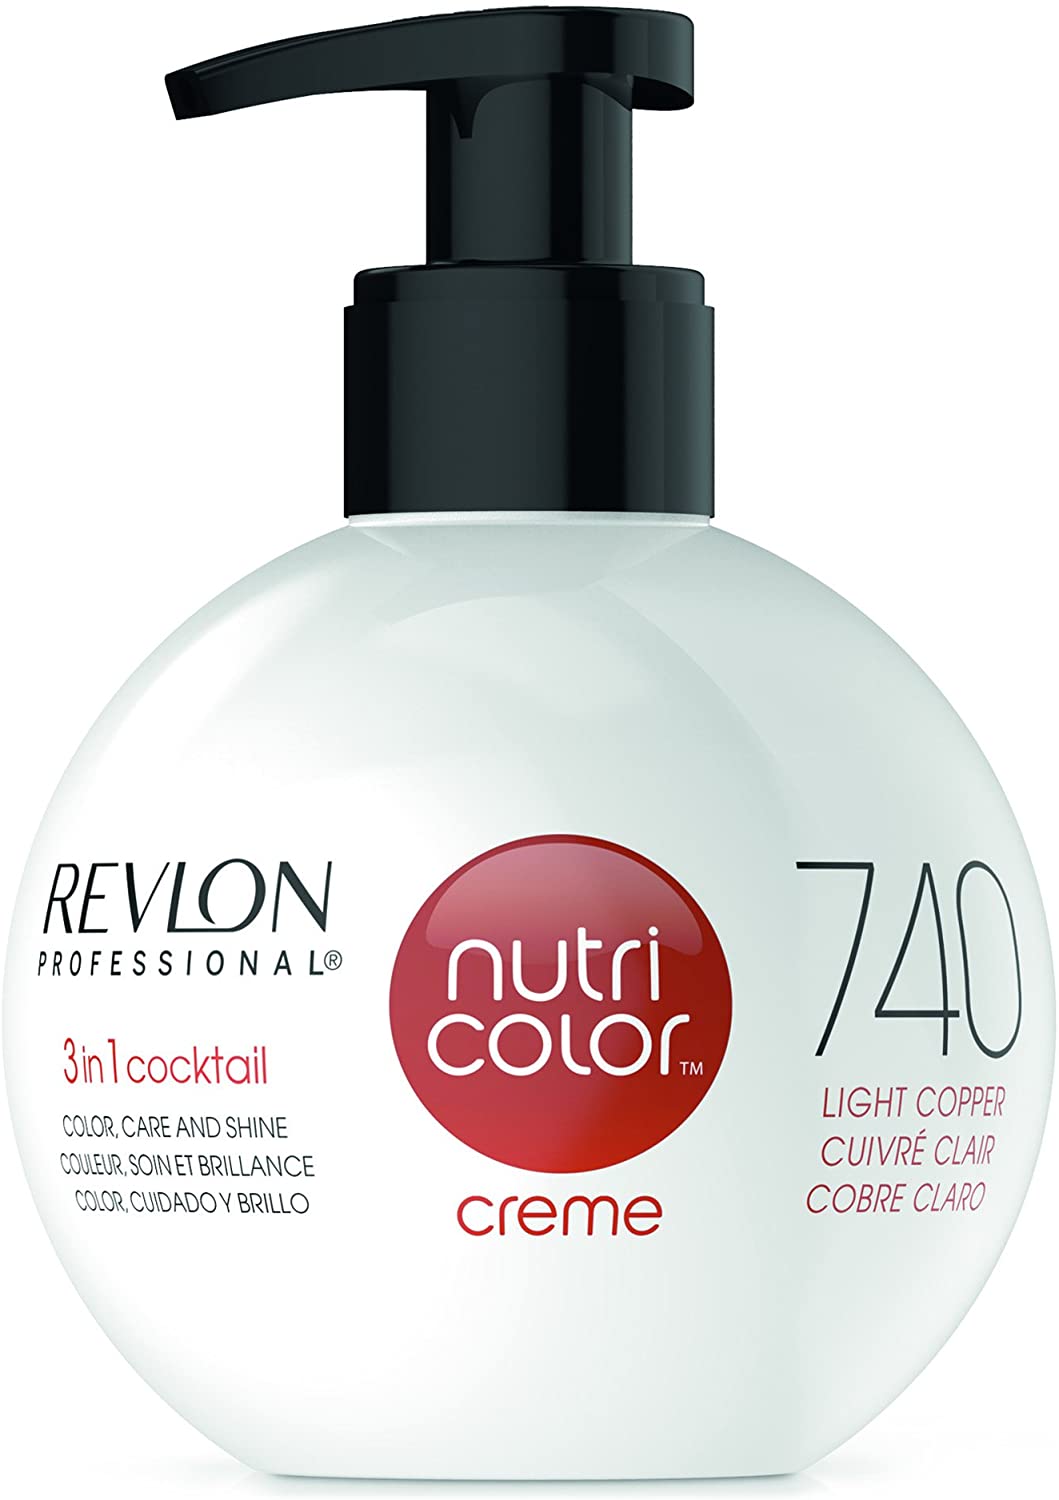 Revlon - Nutri Color Creme - 740 - Light Copper - ProCare Outlet by Revlon